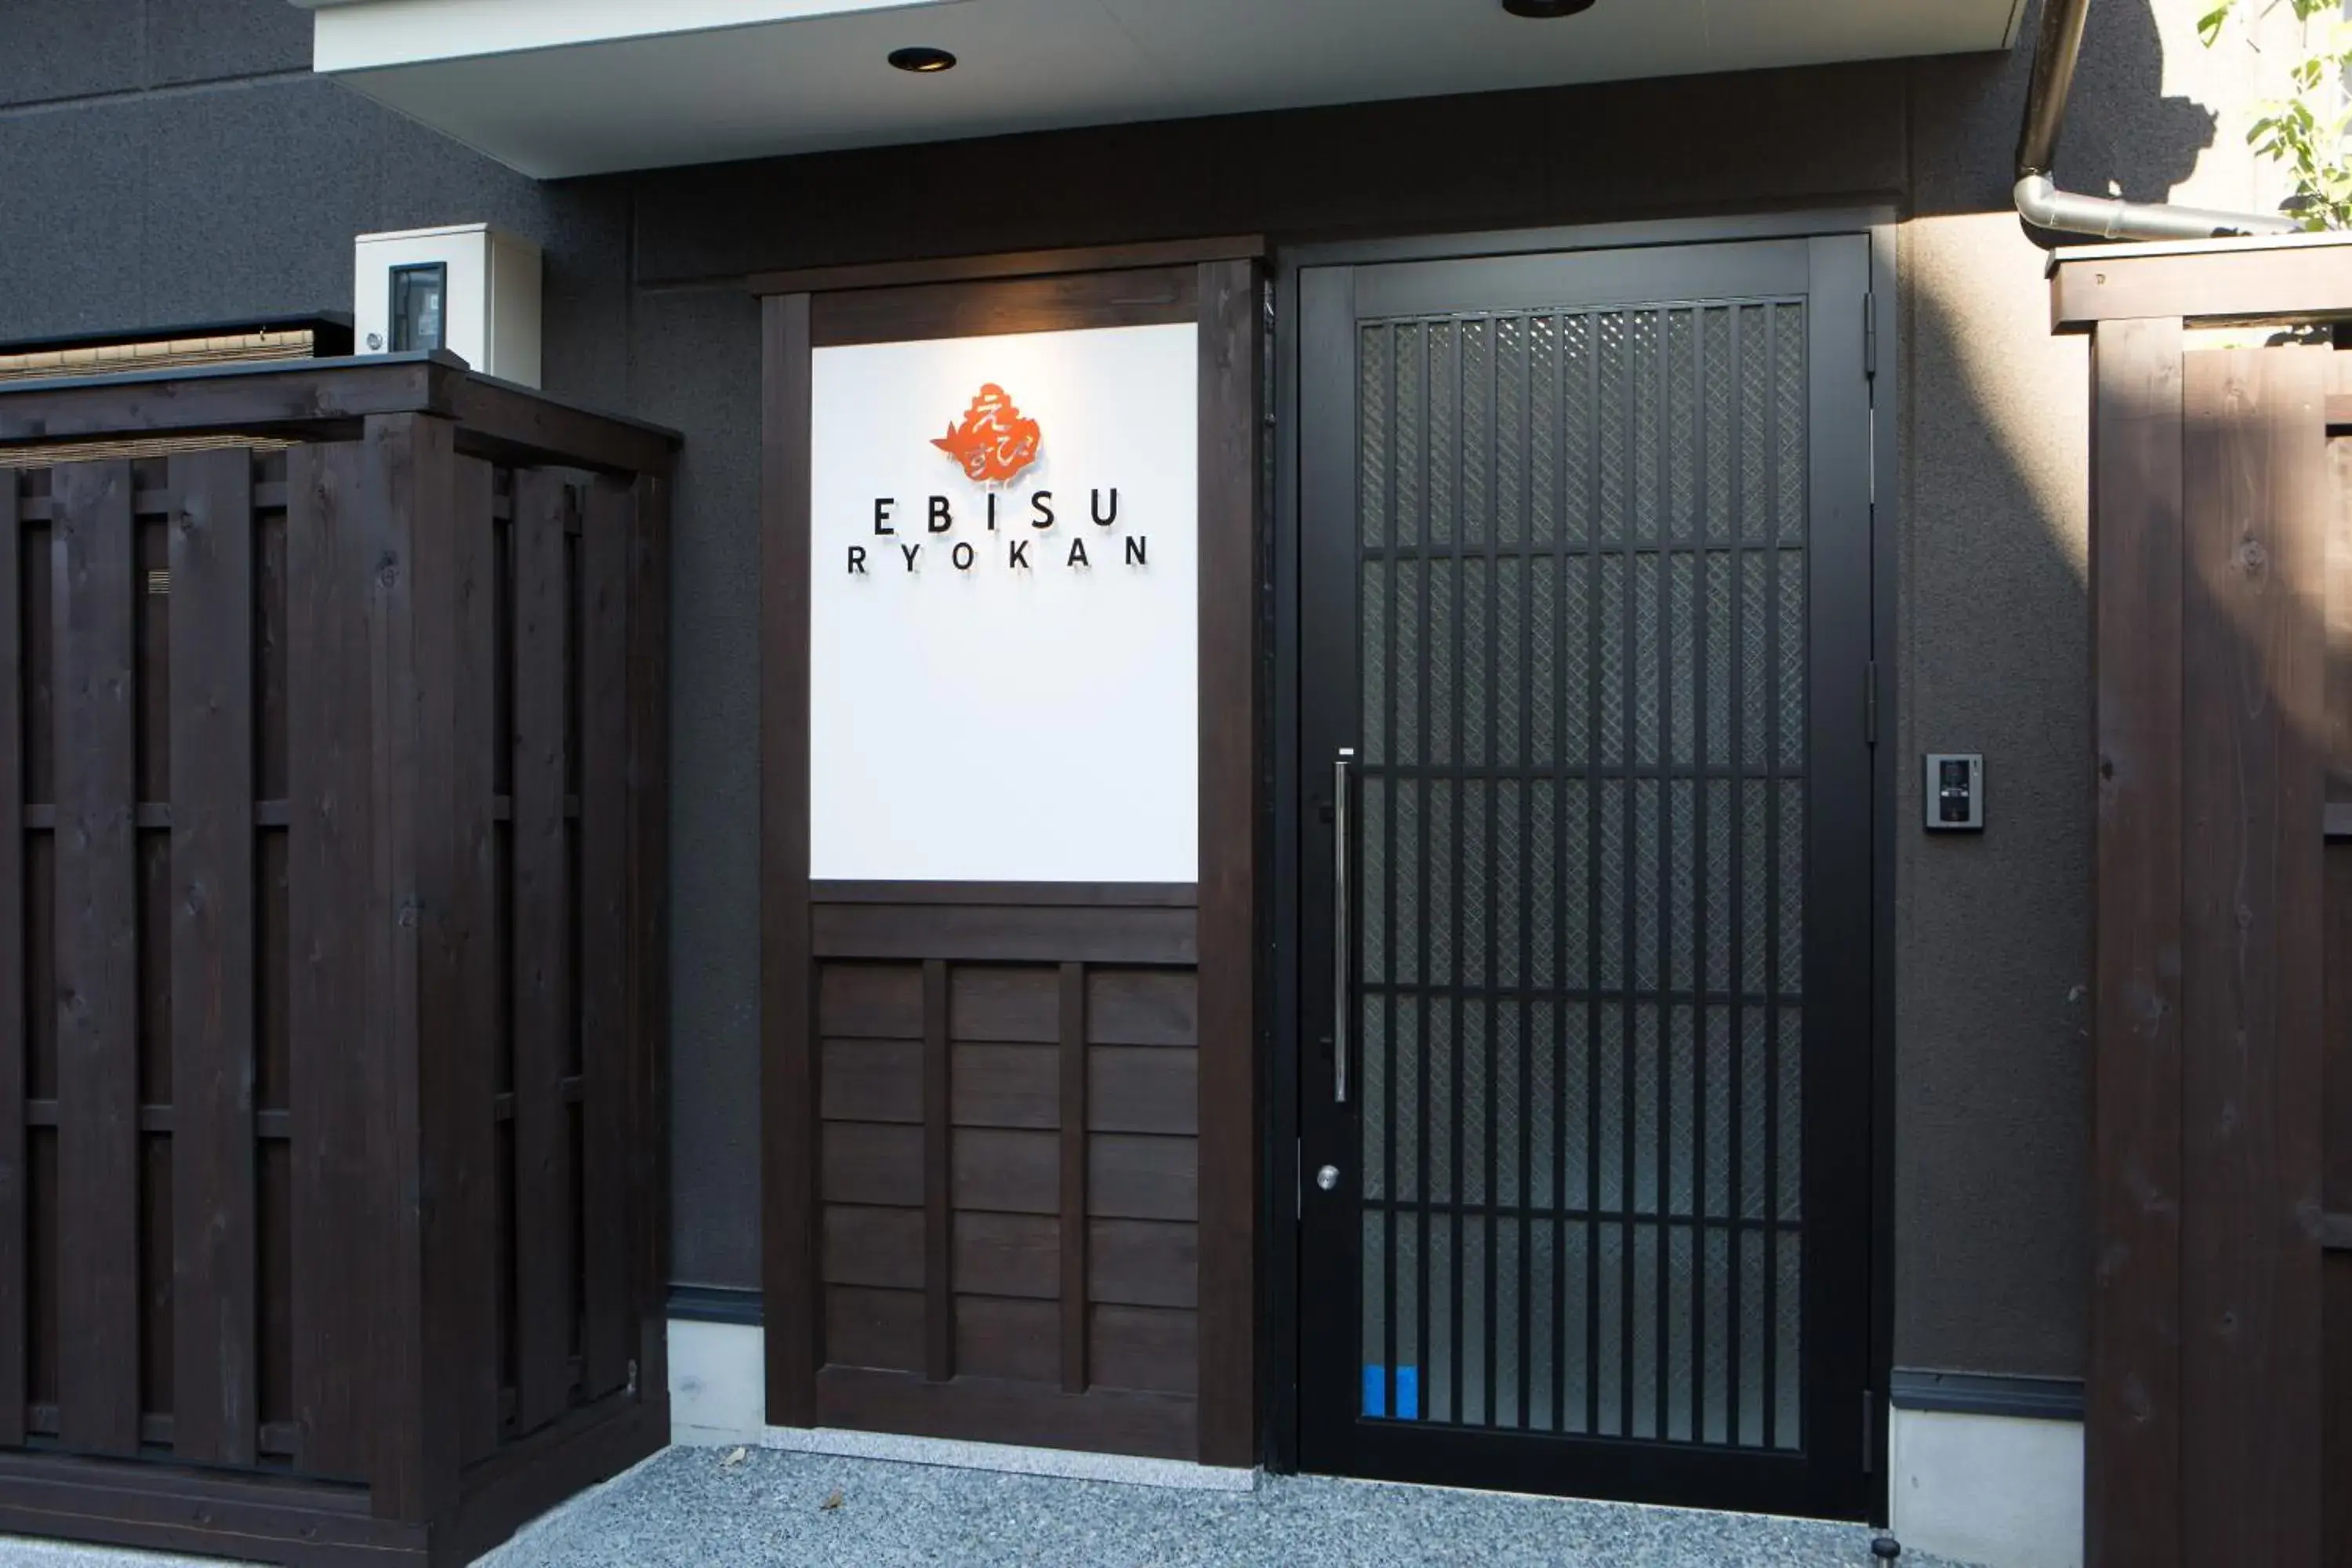 Facade/entrance in Ebisu Ryokan